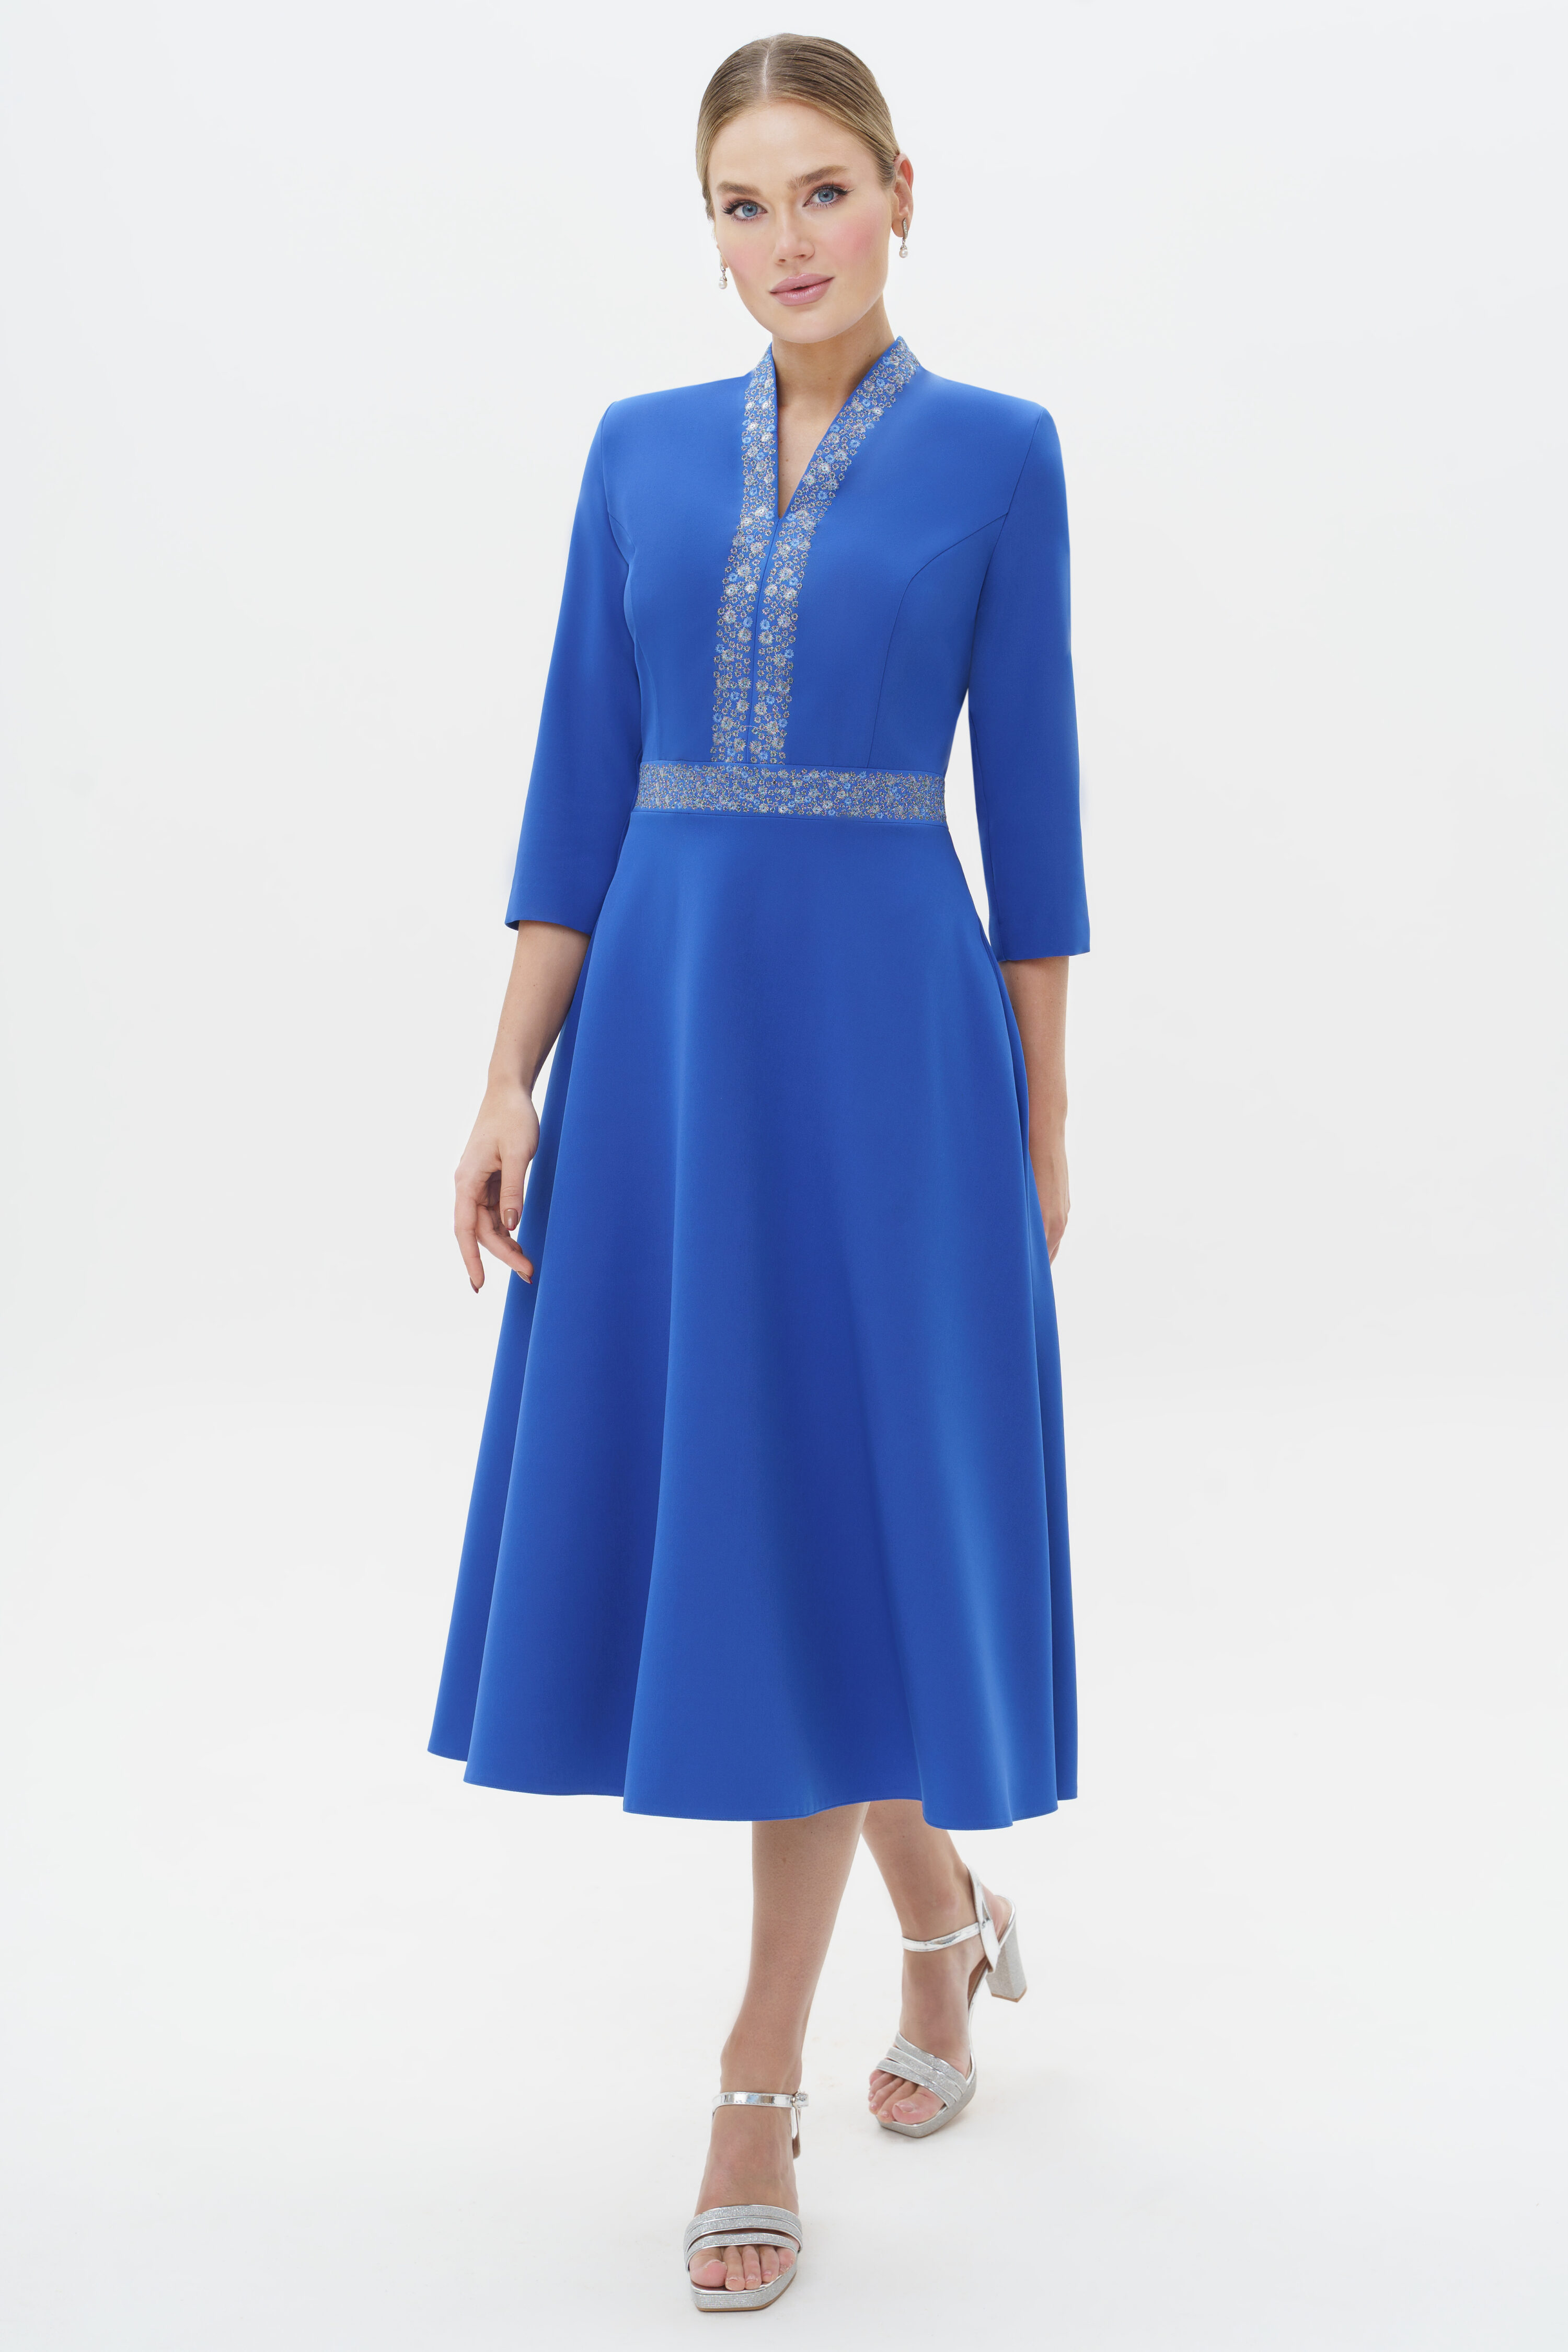 Купить платье URS 22-974-4 голубое с вышивкой